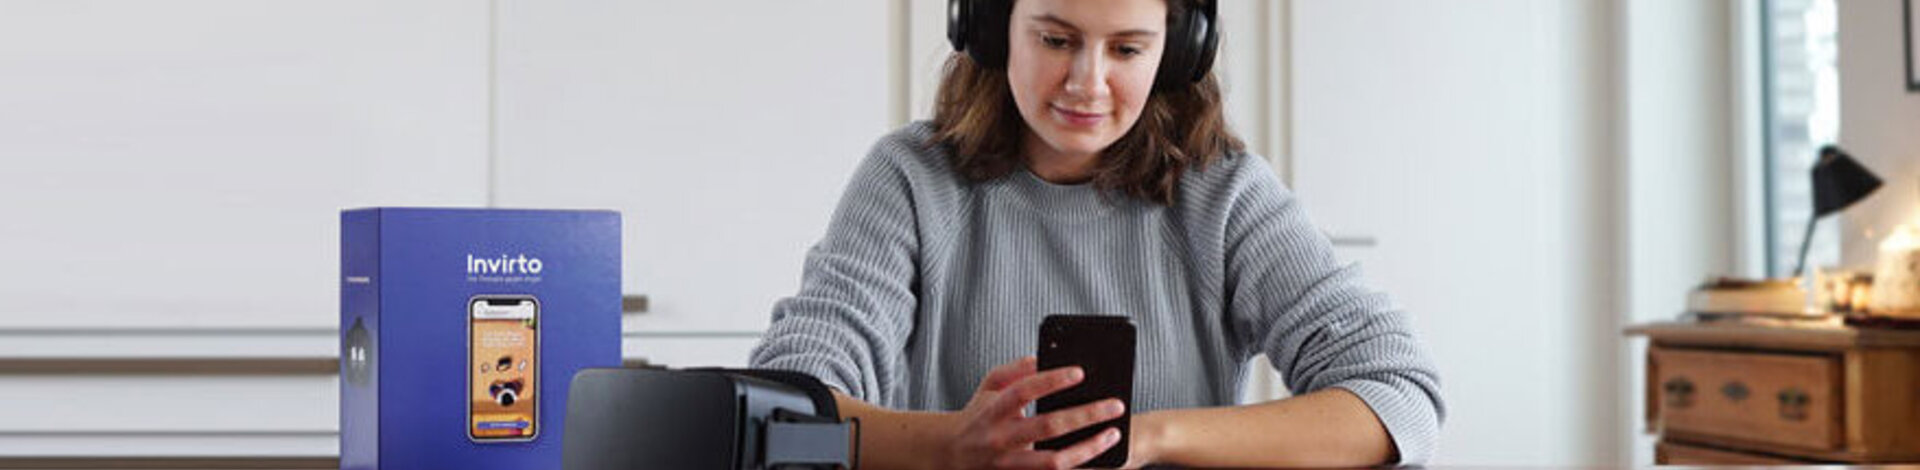 Eine junge Frau sitzt an einem Tisch, trägt Kopfhörer und schaut auf ein Handy, das sie in ihrer rechten Hand hält. Neben ihr auf dem Tisch liegen eine schwarze Virtual-Reality-Brille und eine violette Box, auf der die "Invirto"-App auf einem Smartphone abgebildet ist.